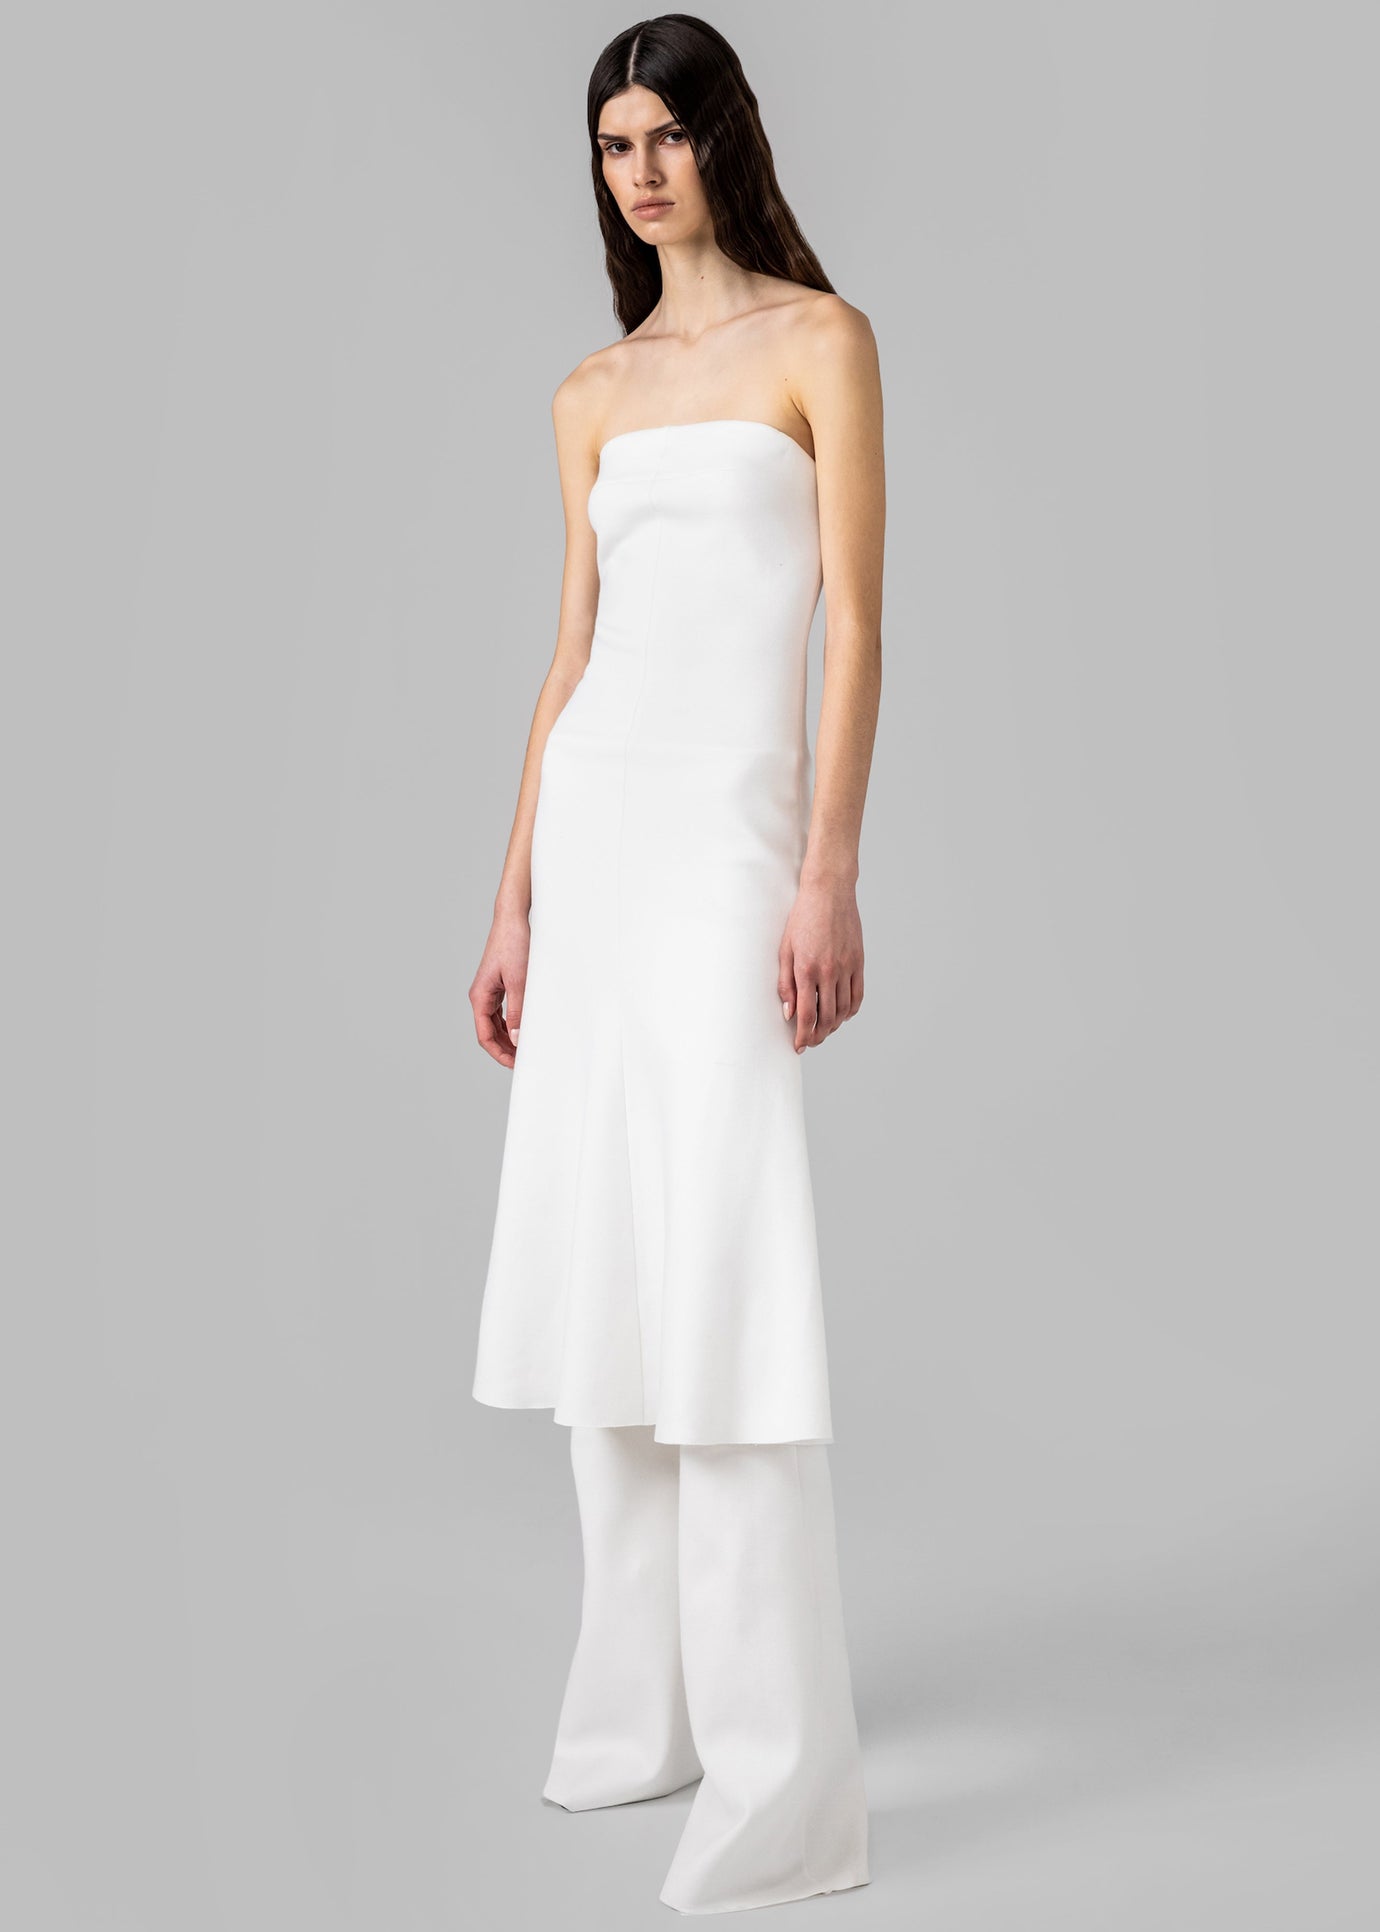 Gudu Dress #08 - White